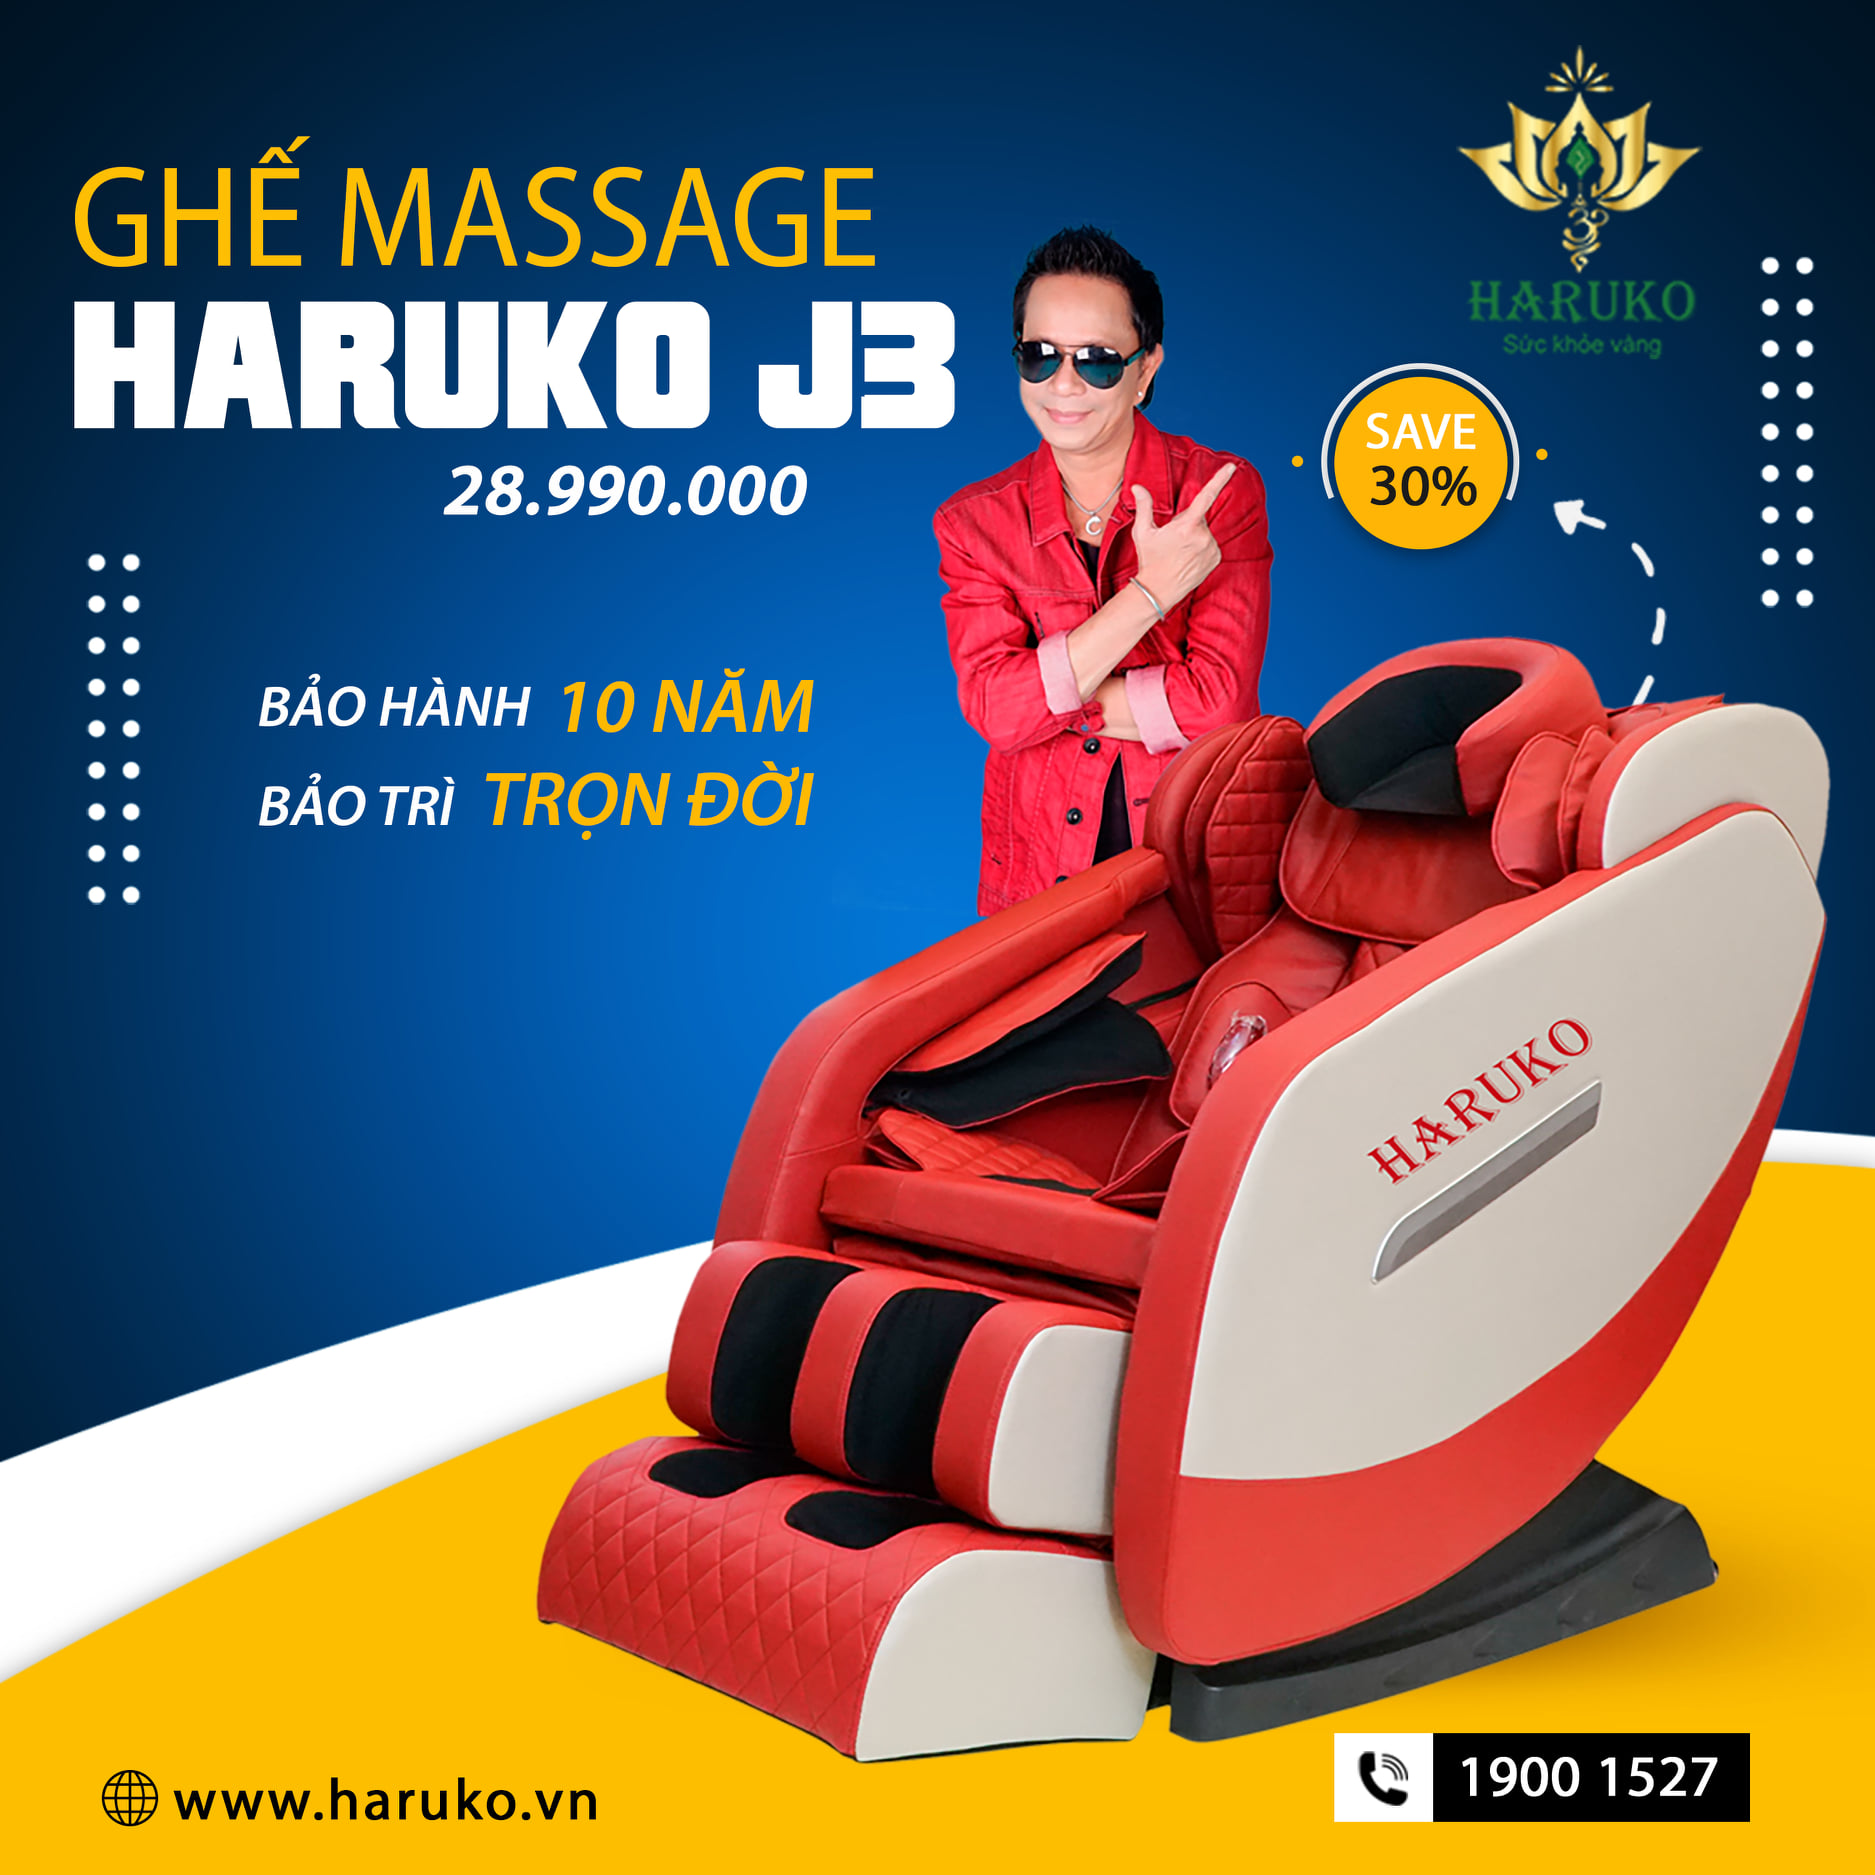 Ghế massage Haruko-J3 với chức năng loa bluetooth nâng tầm trải nghiệm thư giãn cho người sử dụng